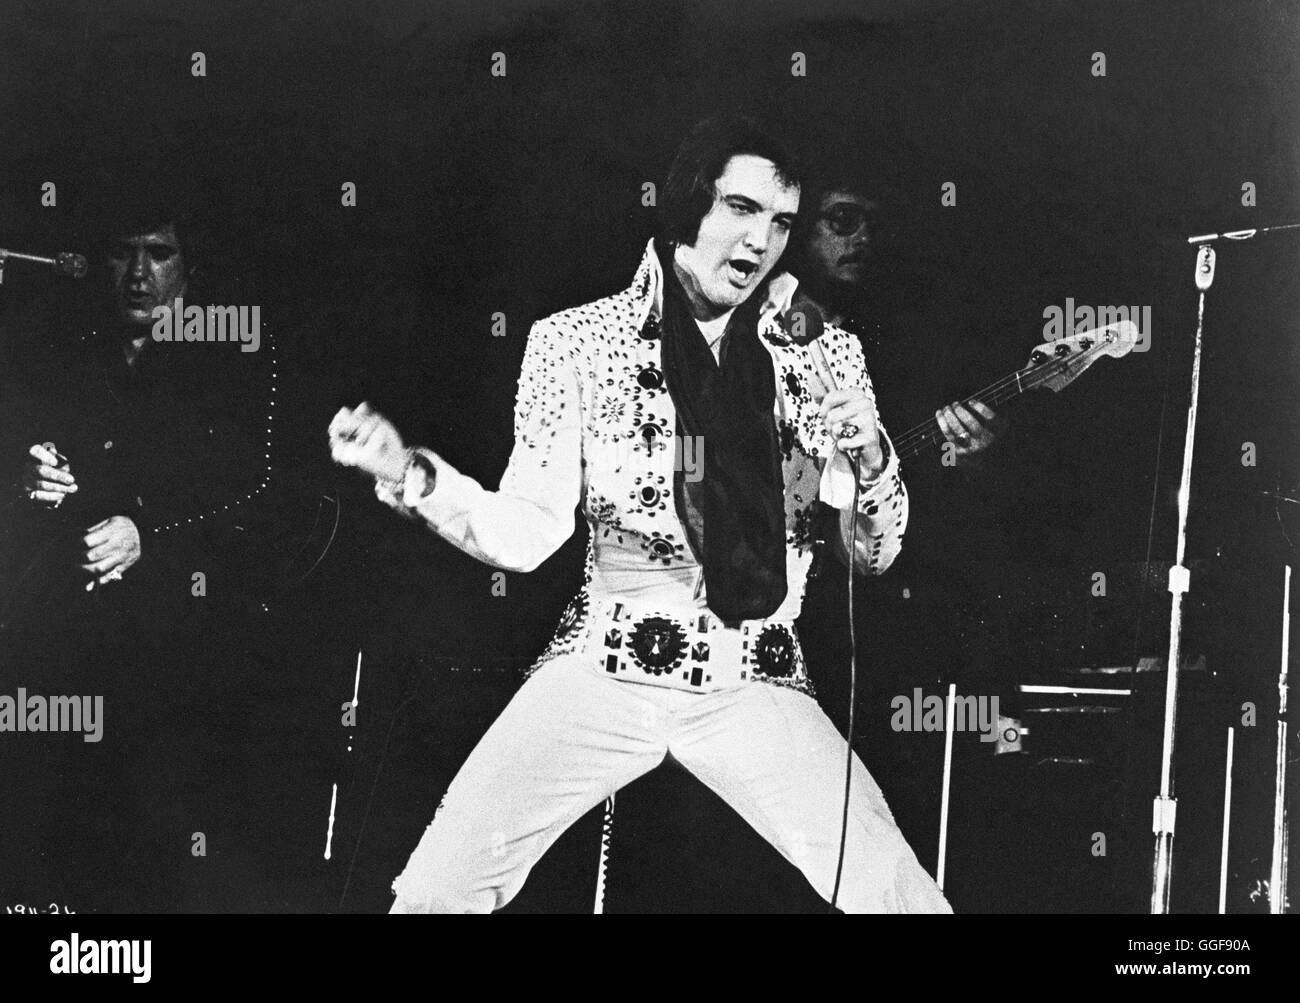 ELVIS ON TOUR / Elvis on Tour USA 1972 / Pierre Adidge, Robert Adel Aufzeichnung einer Konzert-Tournee durch die USA 1972, mit Auftritten, Filmausschnitten und Interviews. Bild: ELVIS PRESLEY on Tour, 1972./ Regie: Pierre Adidge, Robert Adel aka. Elvis on Tour Stock Photo